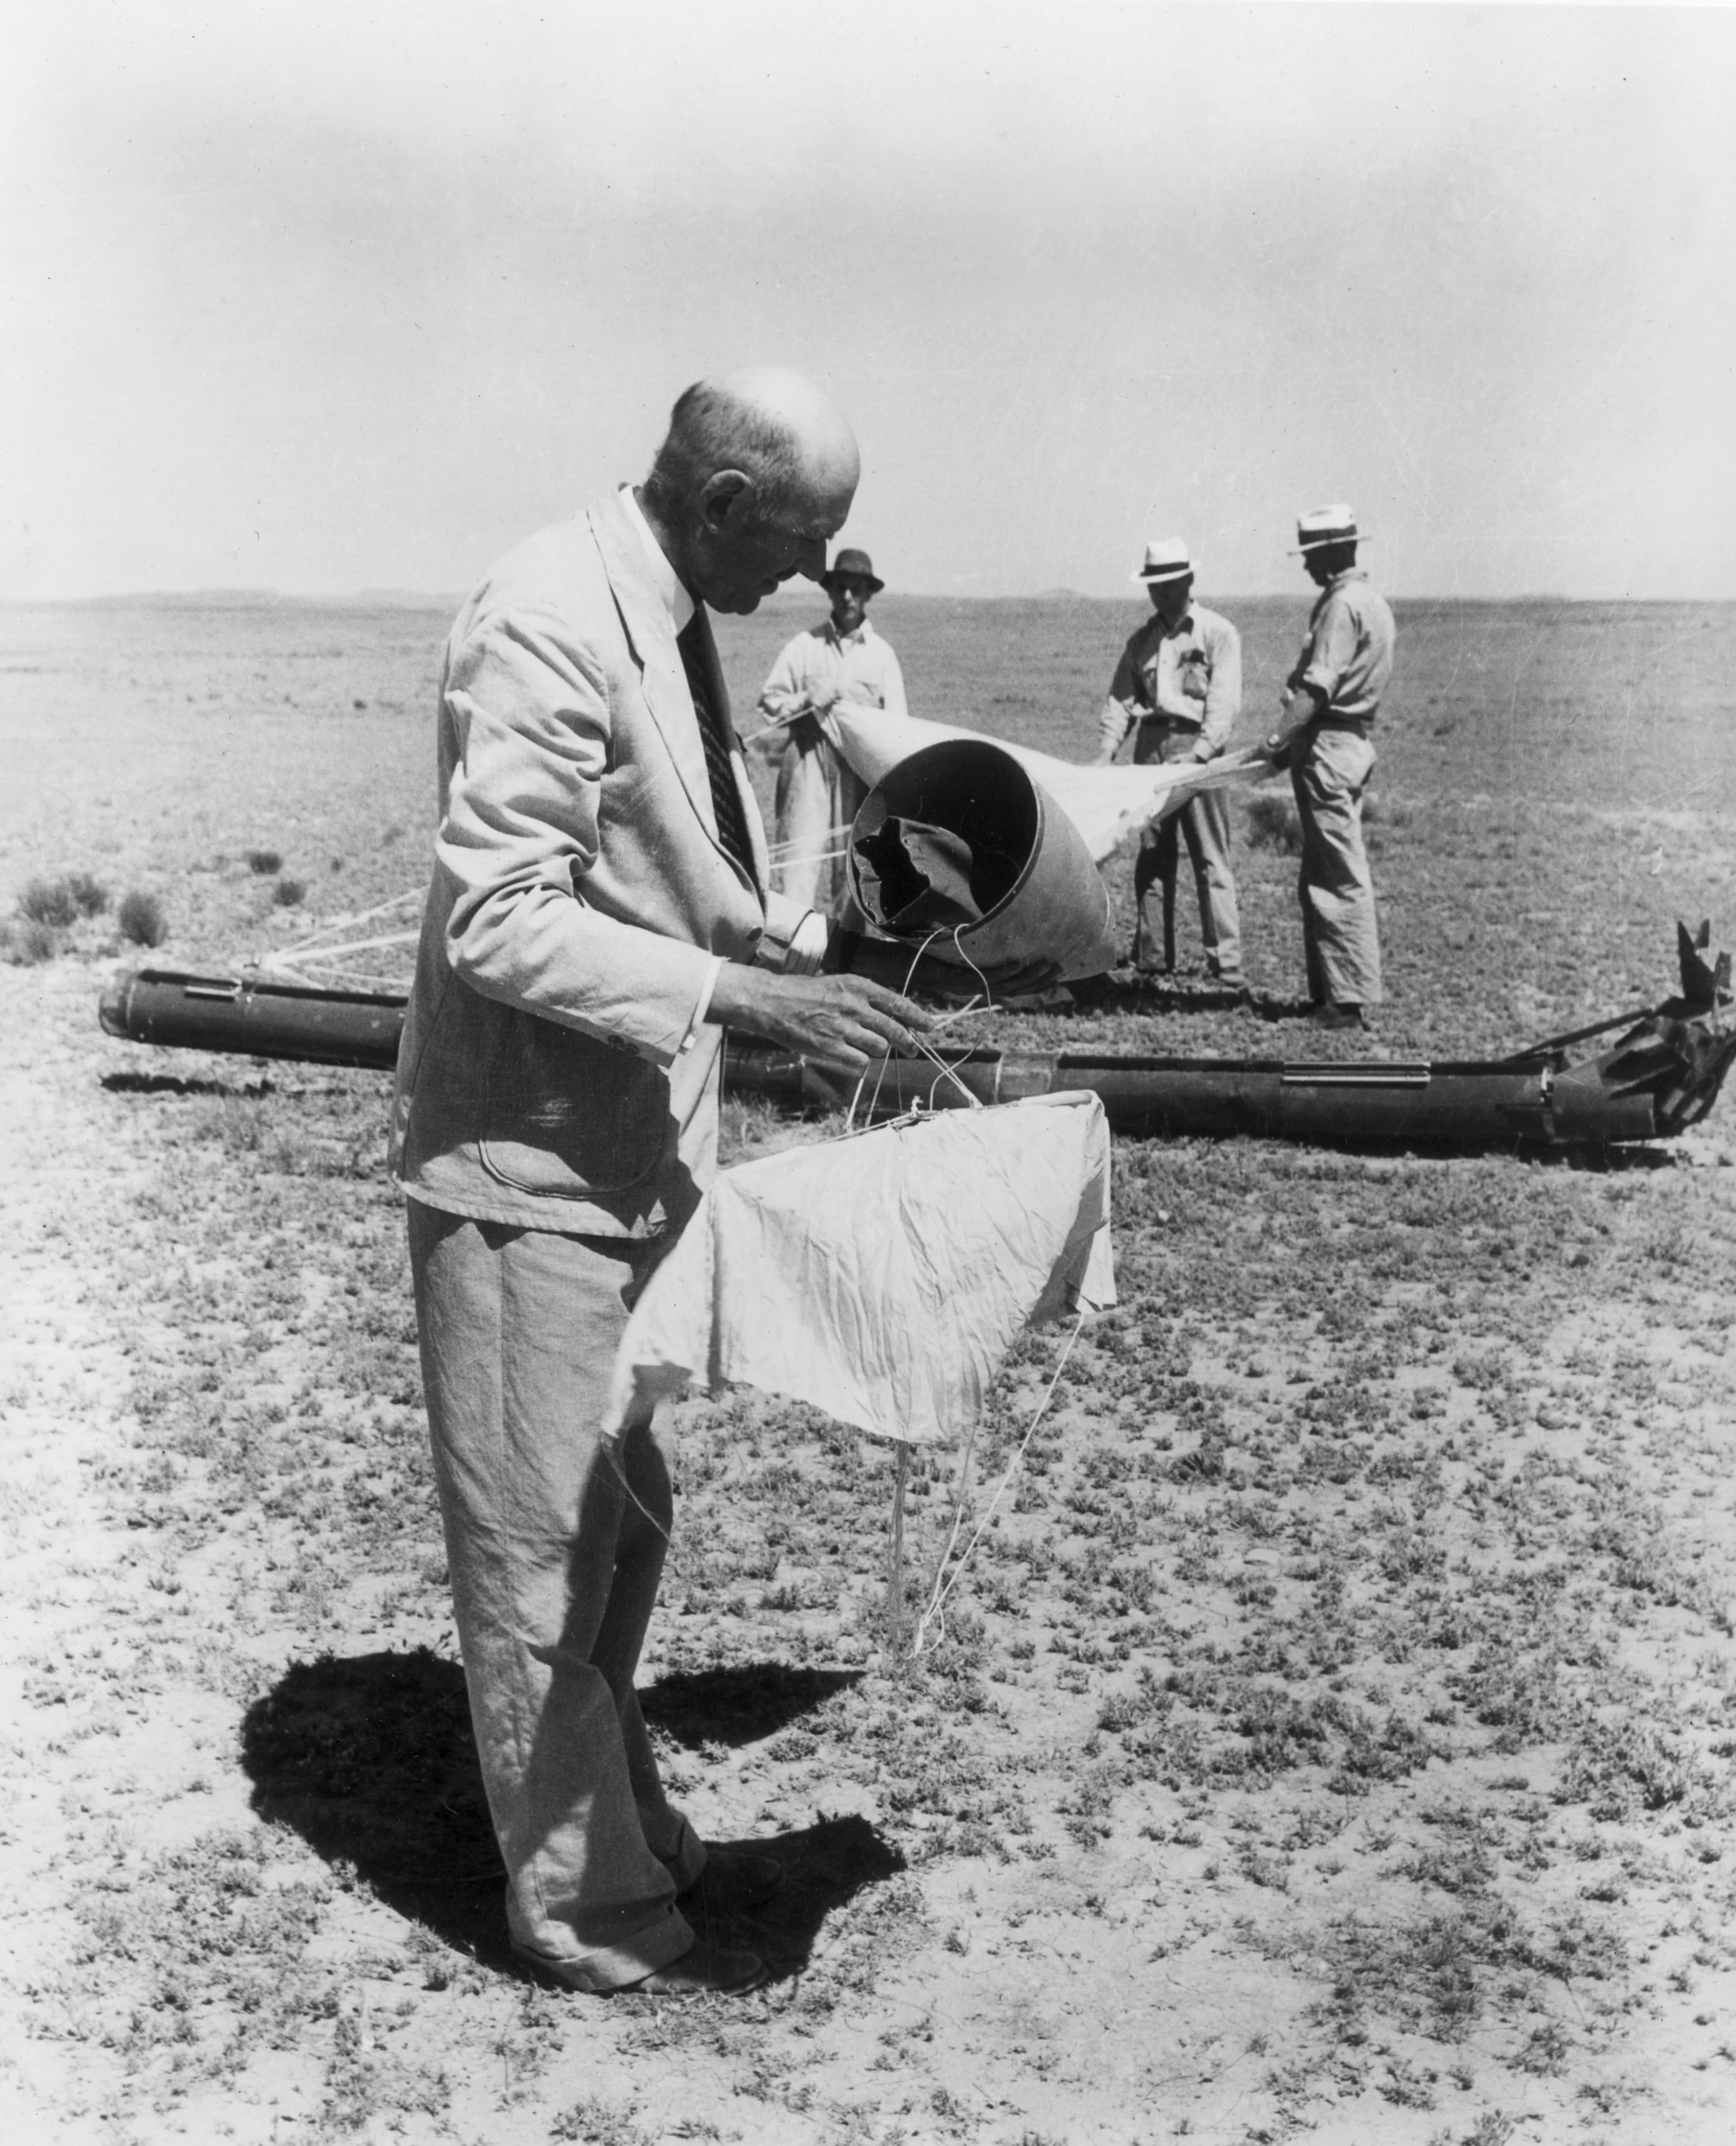 Militares y científicos recogen los objetos caídos en el rancho de Roswell. Eran parte del Proyecto Mogul, un secreto de Estado en los comienzos de la Guerra Fría